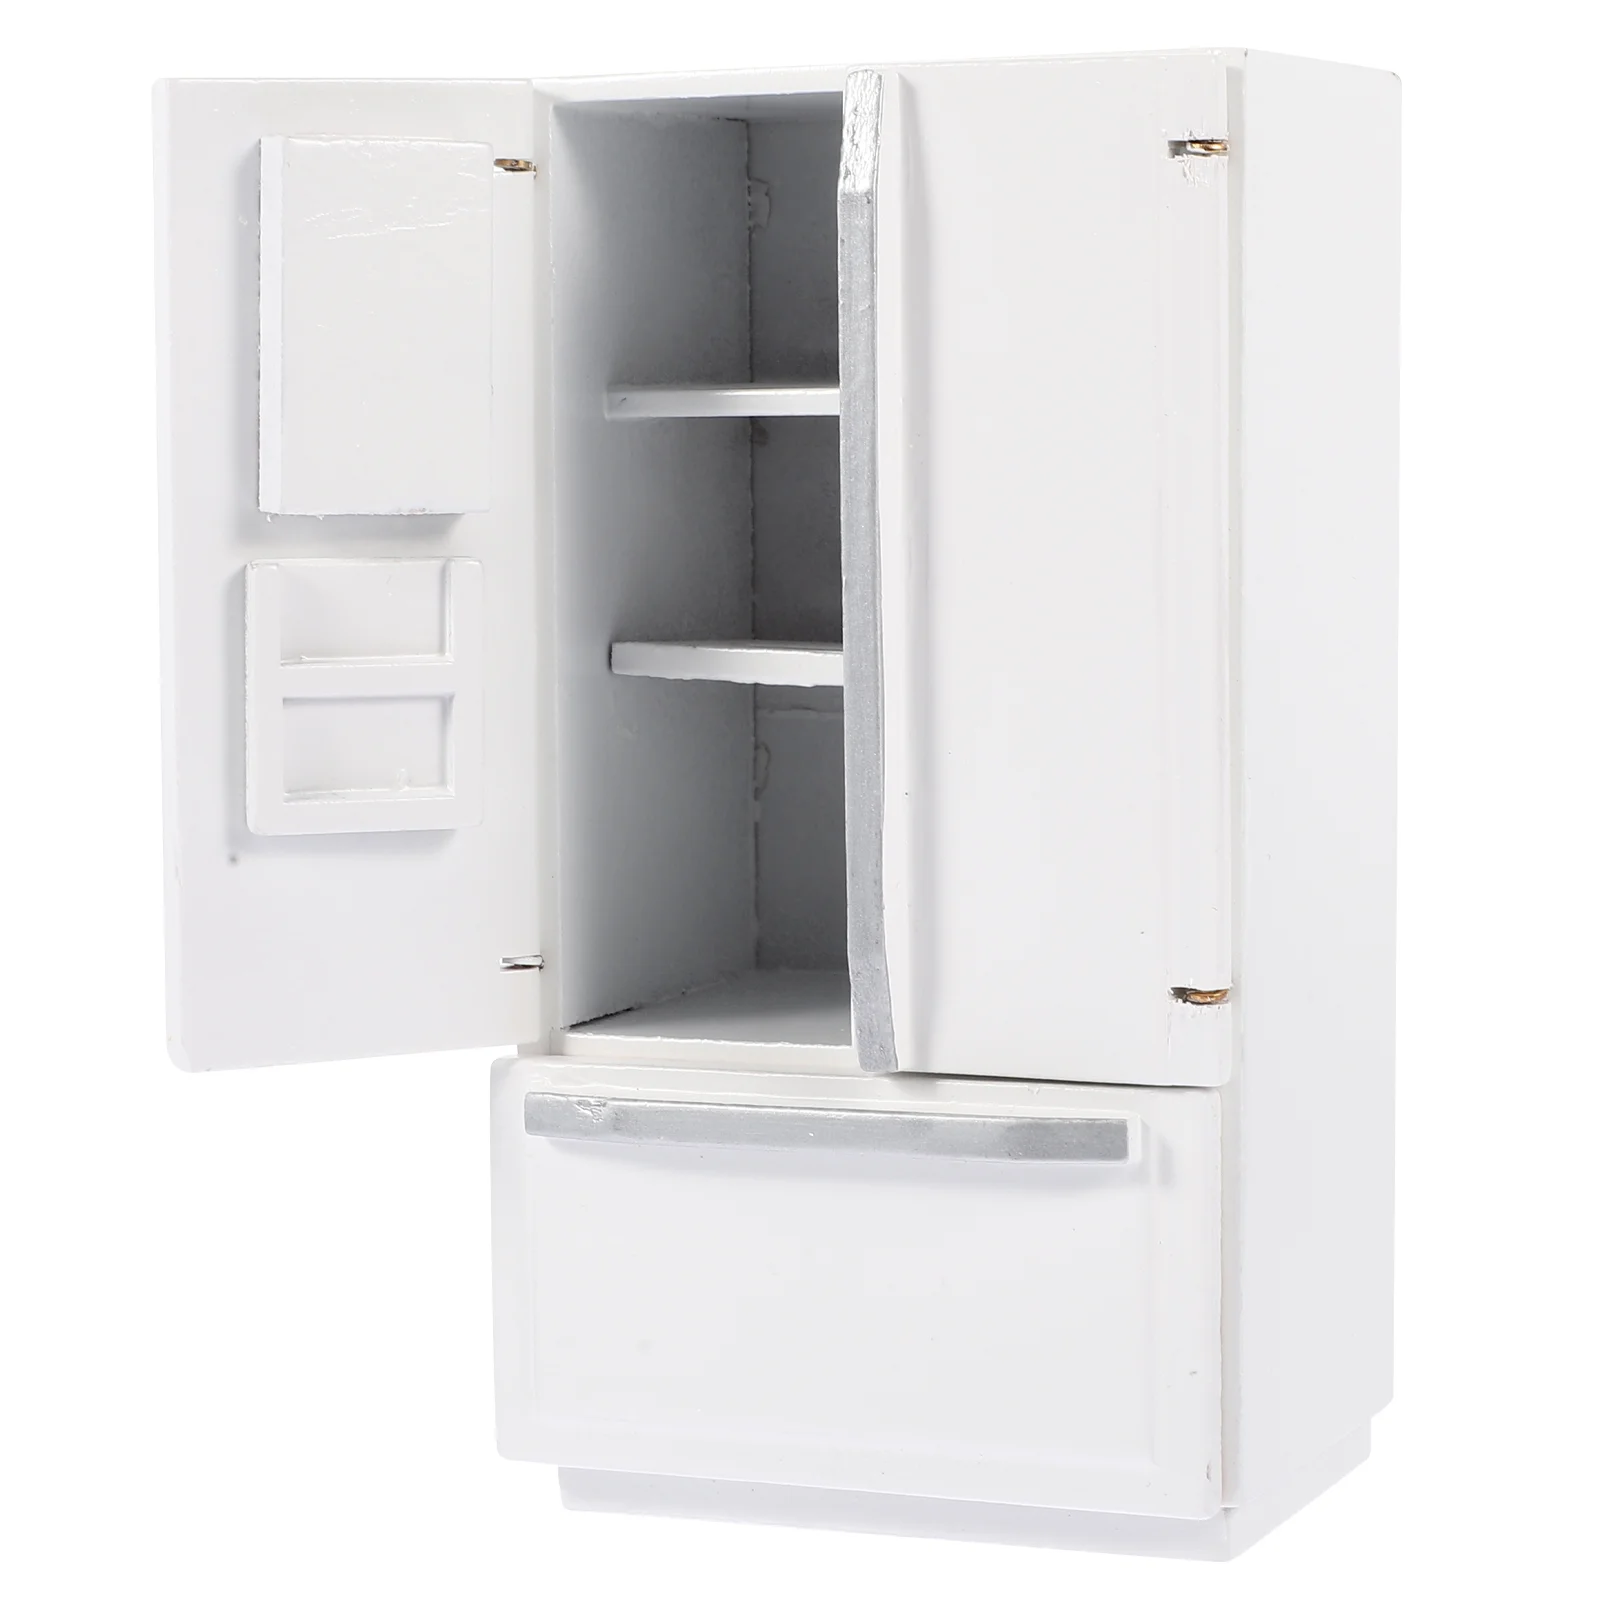 

Домашний холодильник, миниатюрные деревянные холодильники, искусственная модель